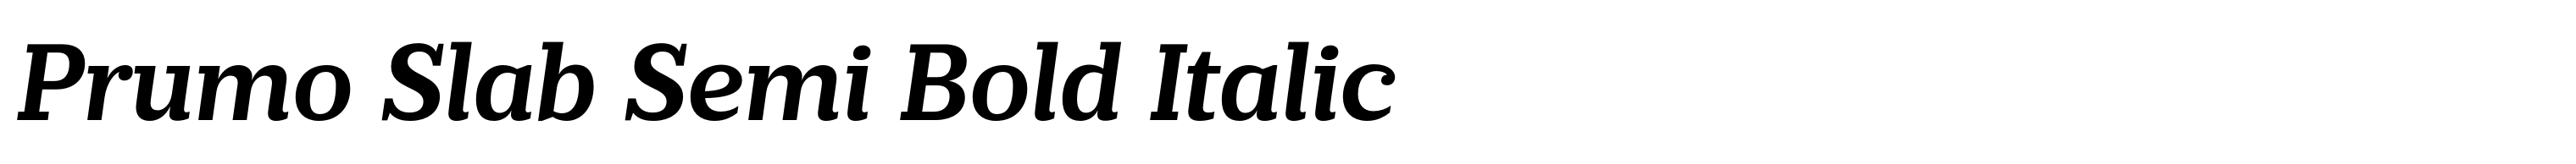 Prumo Slab Semi Bold Italic